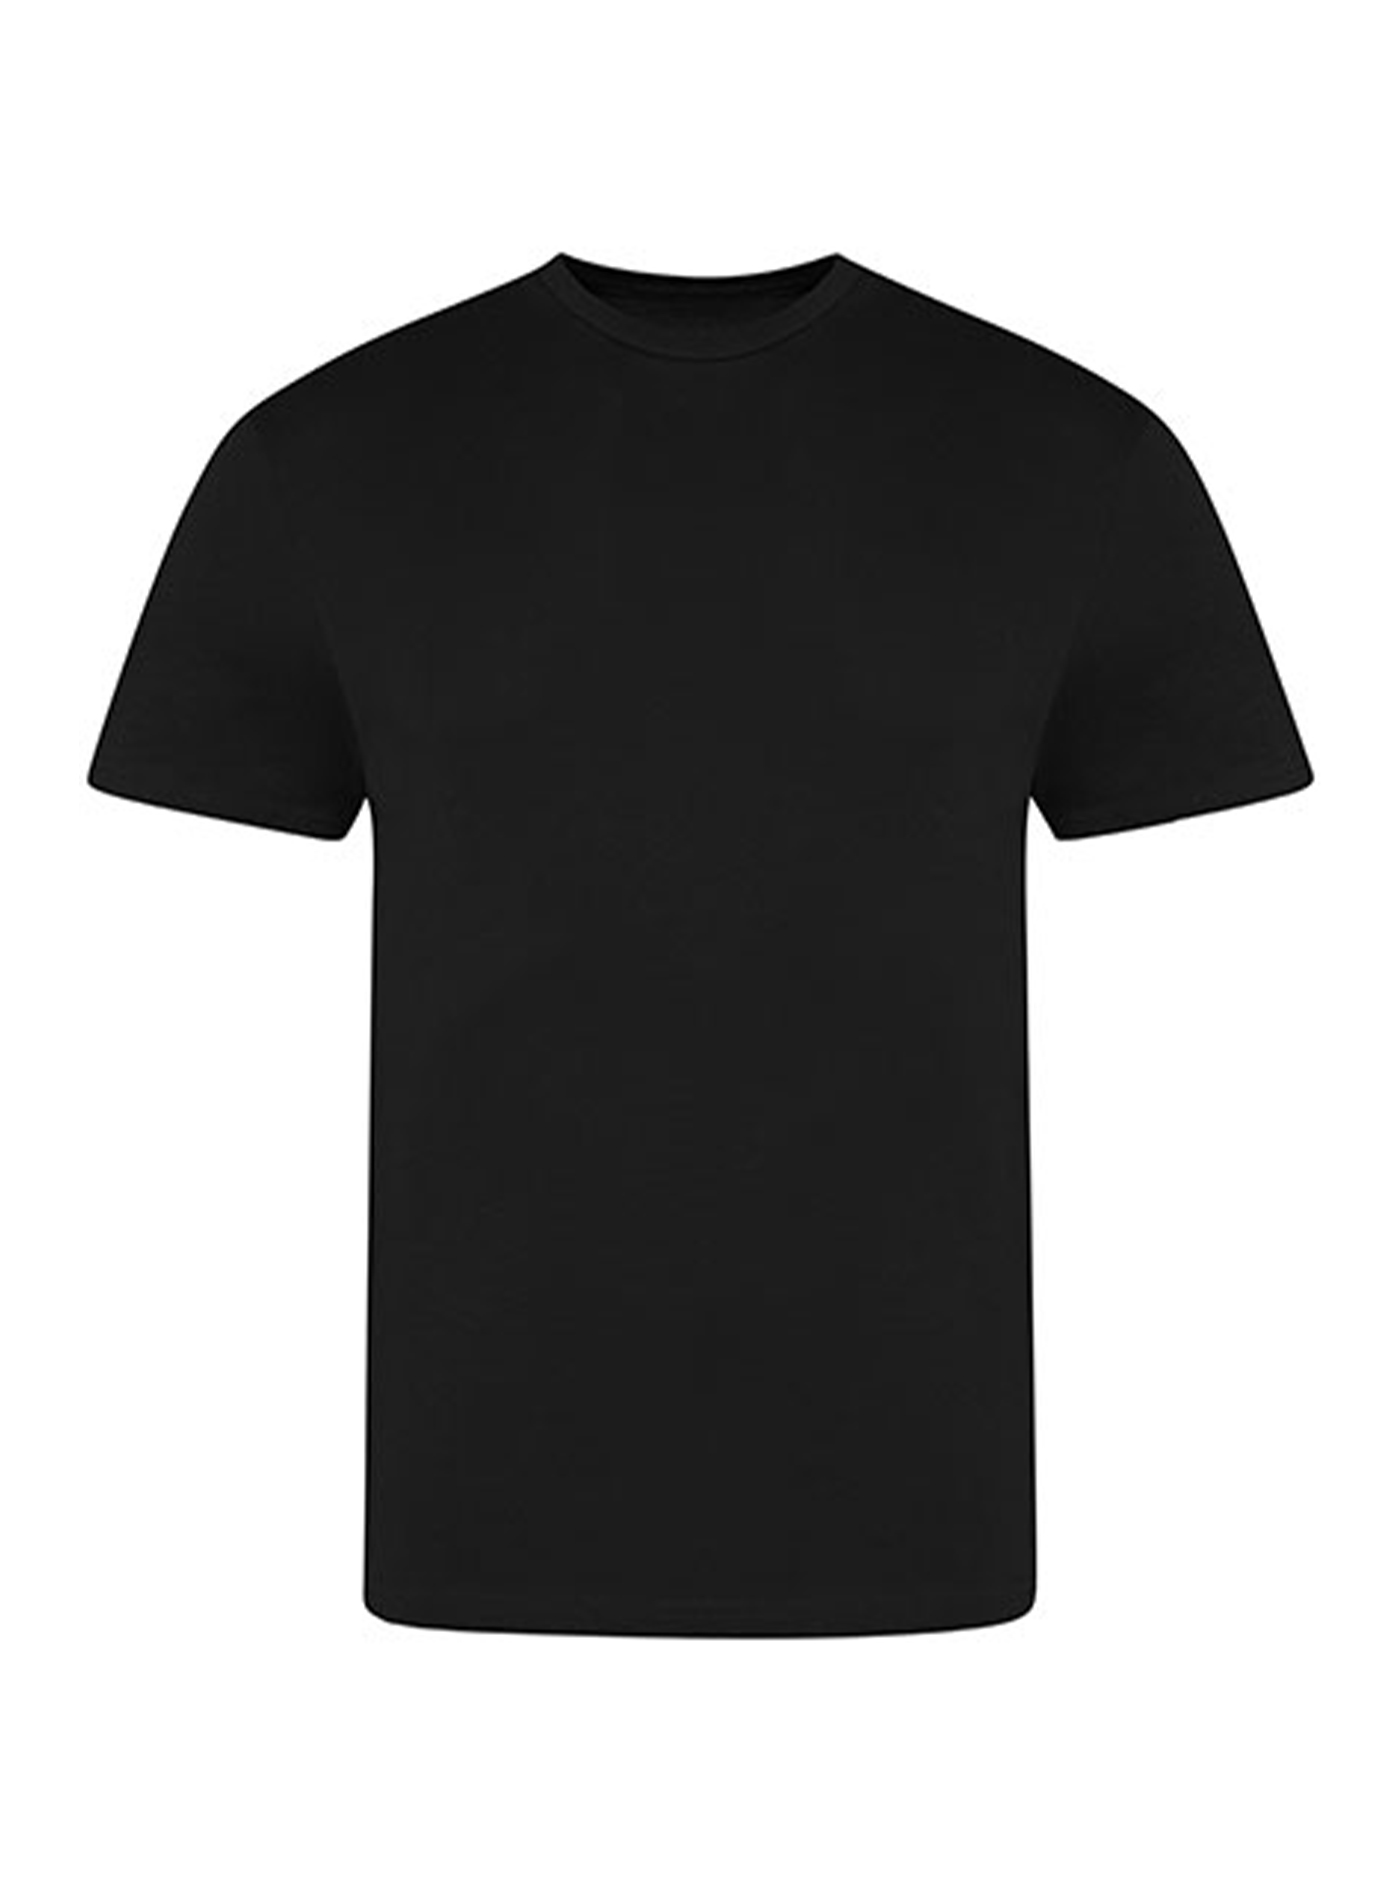 Pánské tričko Just Ts - černá M